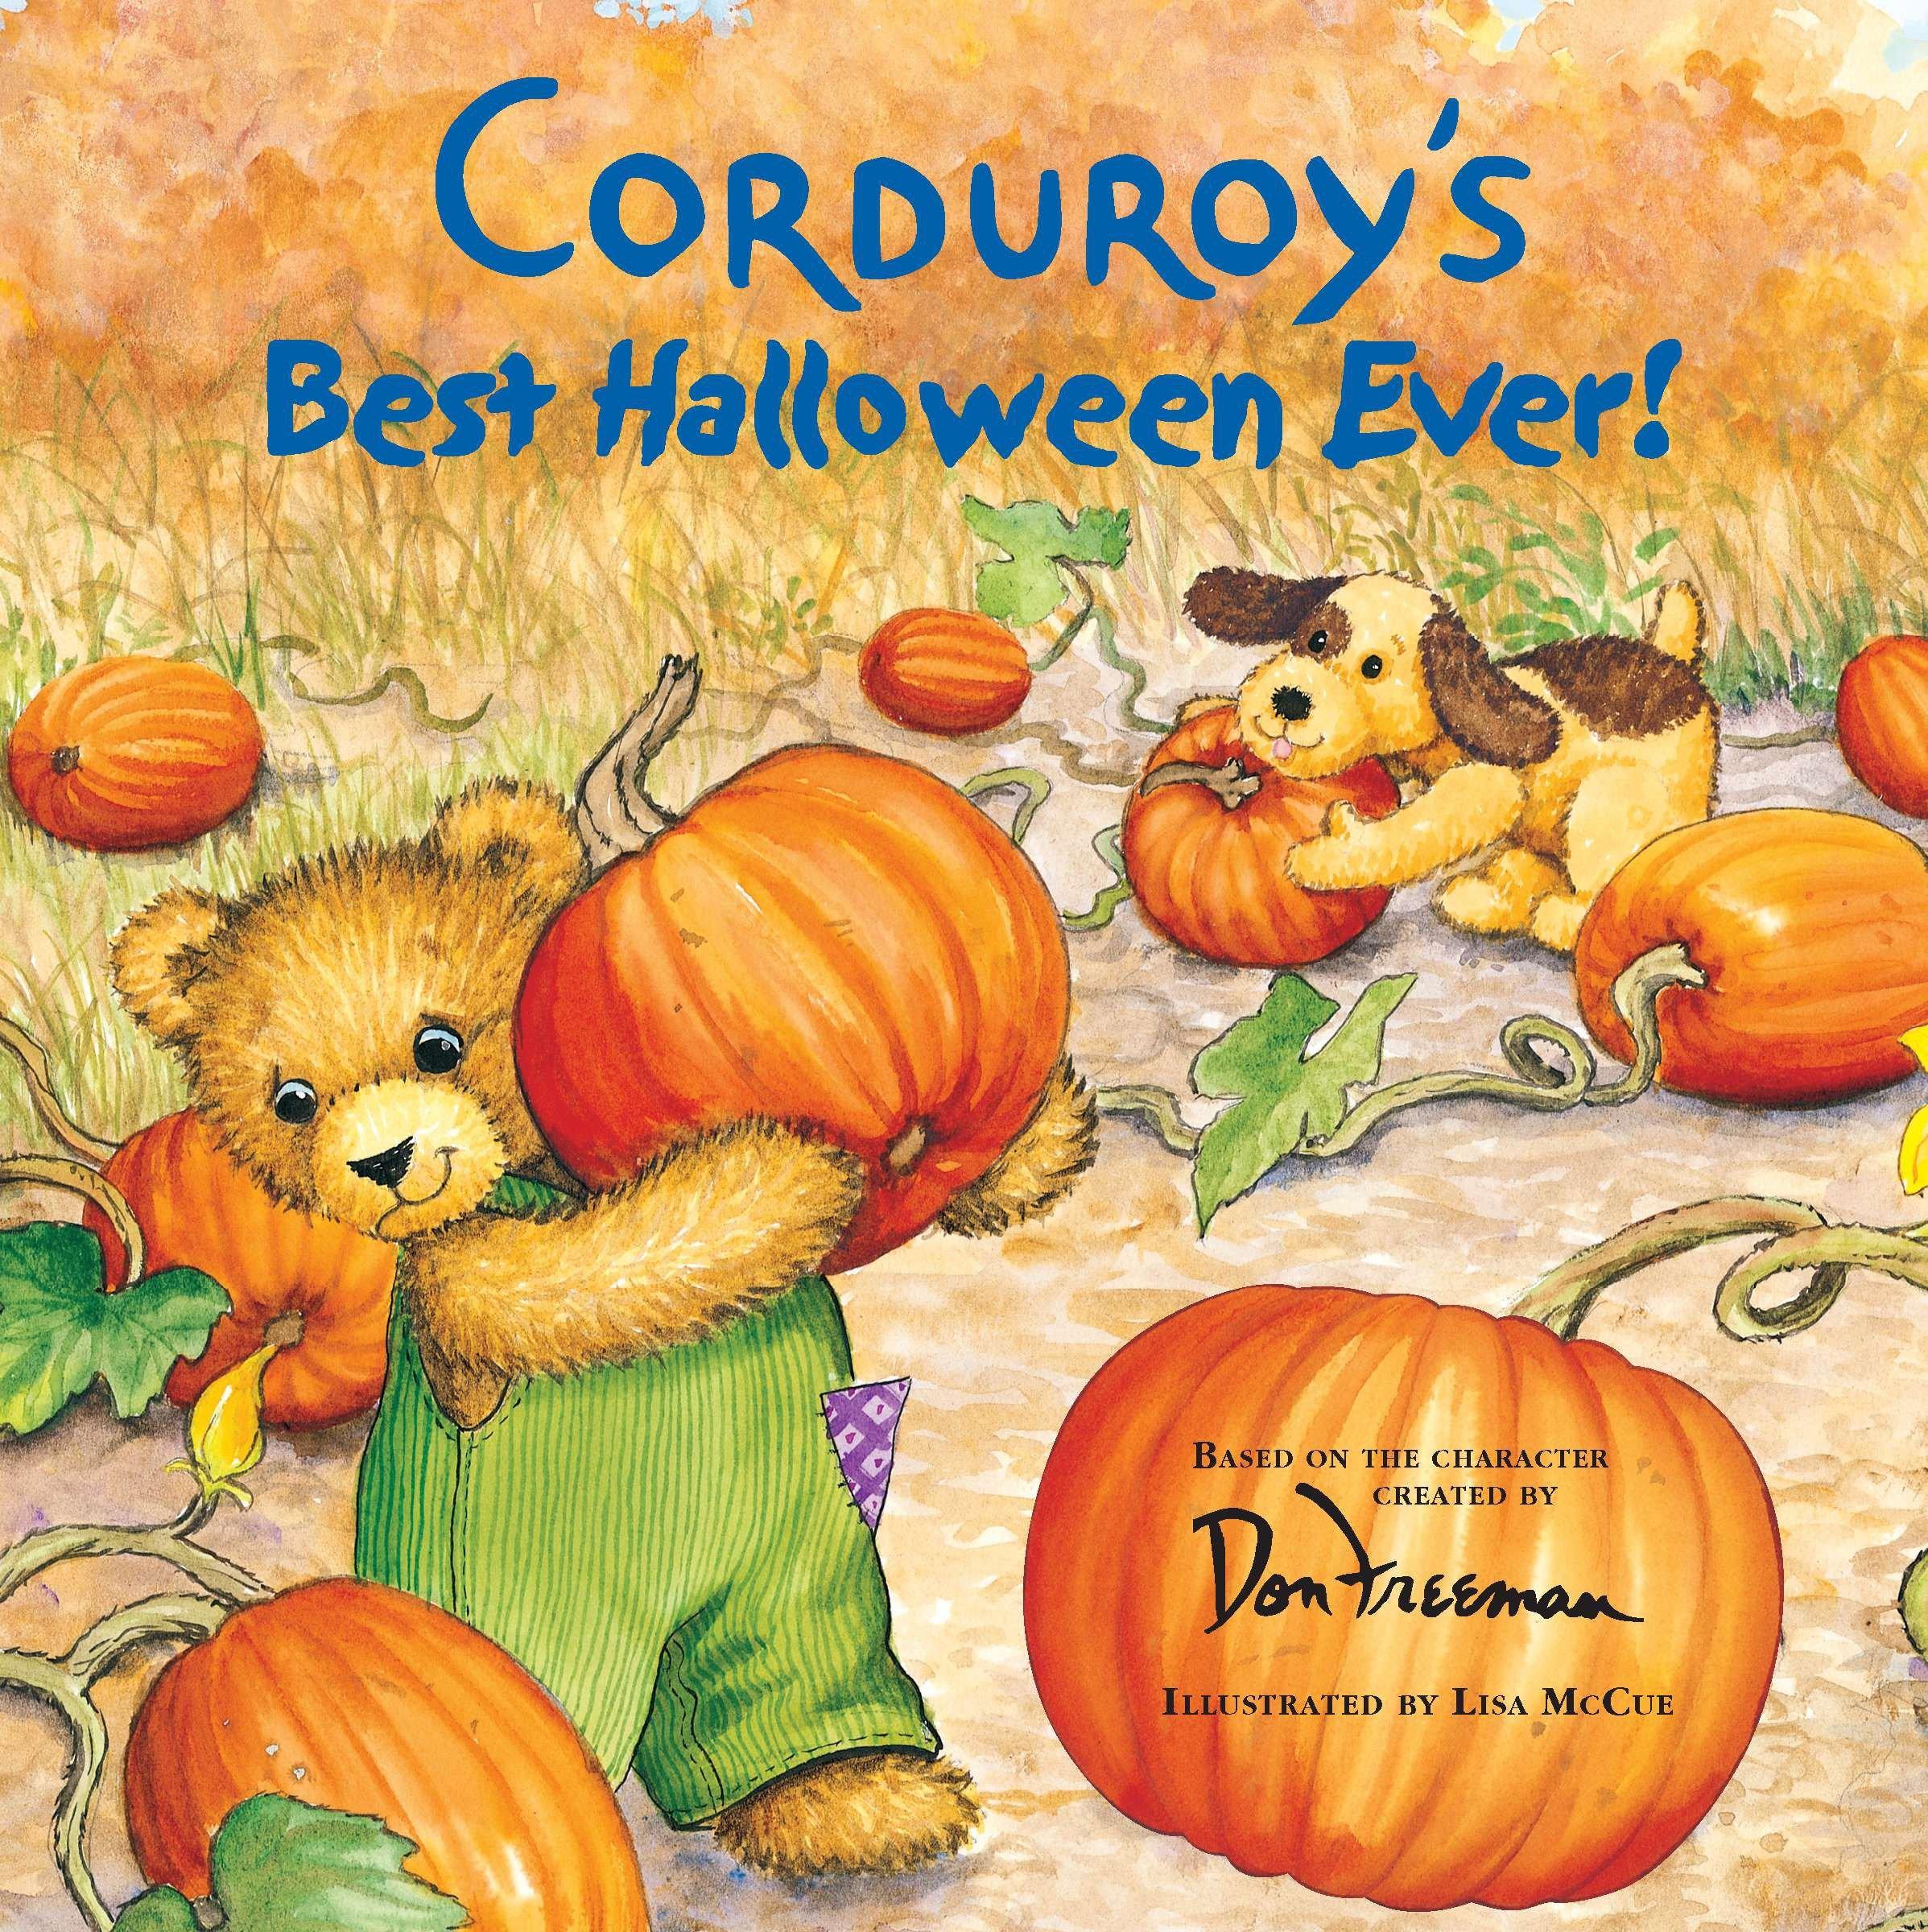 Corduroy s Best Halloween Ever! - Freeman, Don